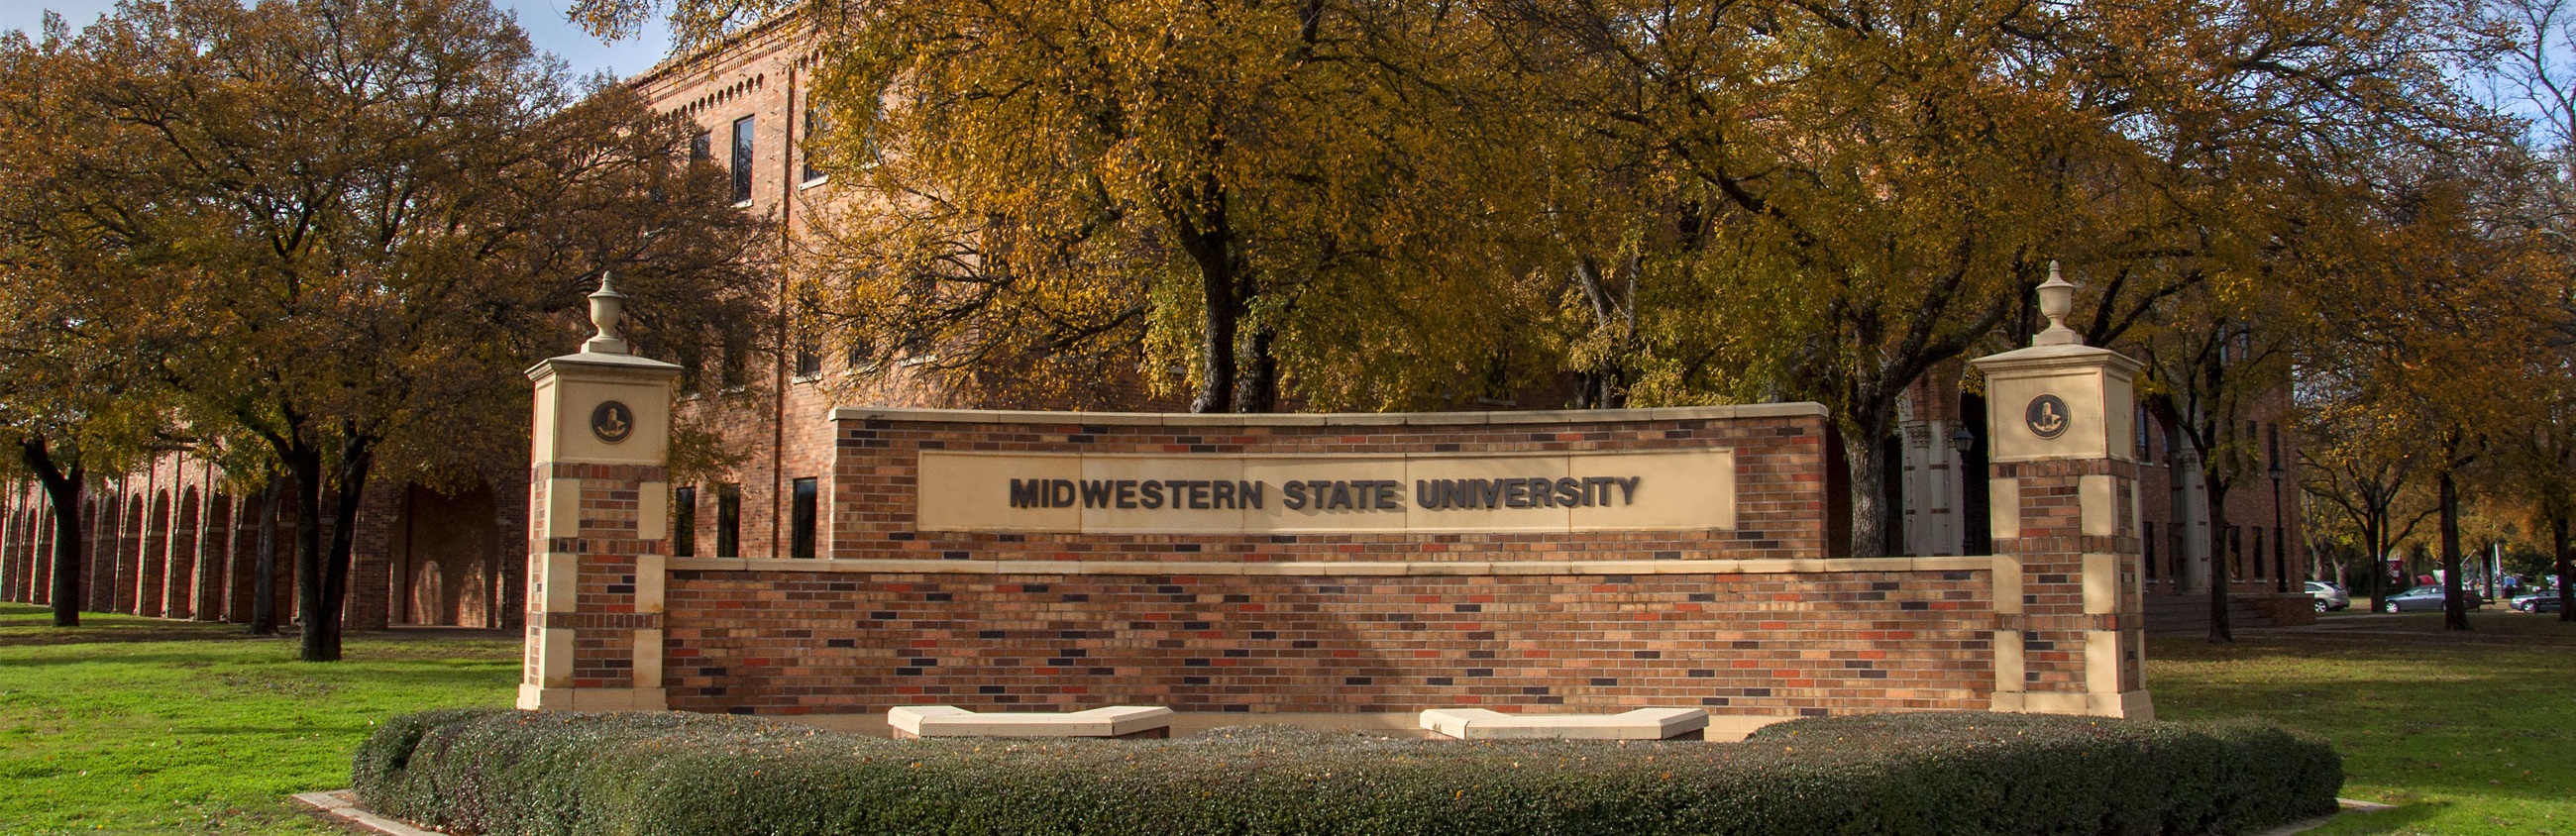 Midwestern State University Wichita Falls